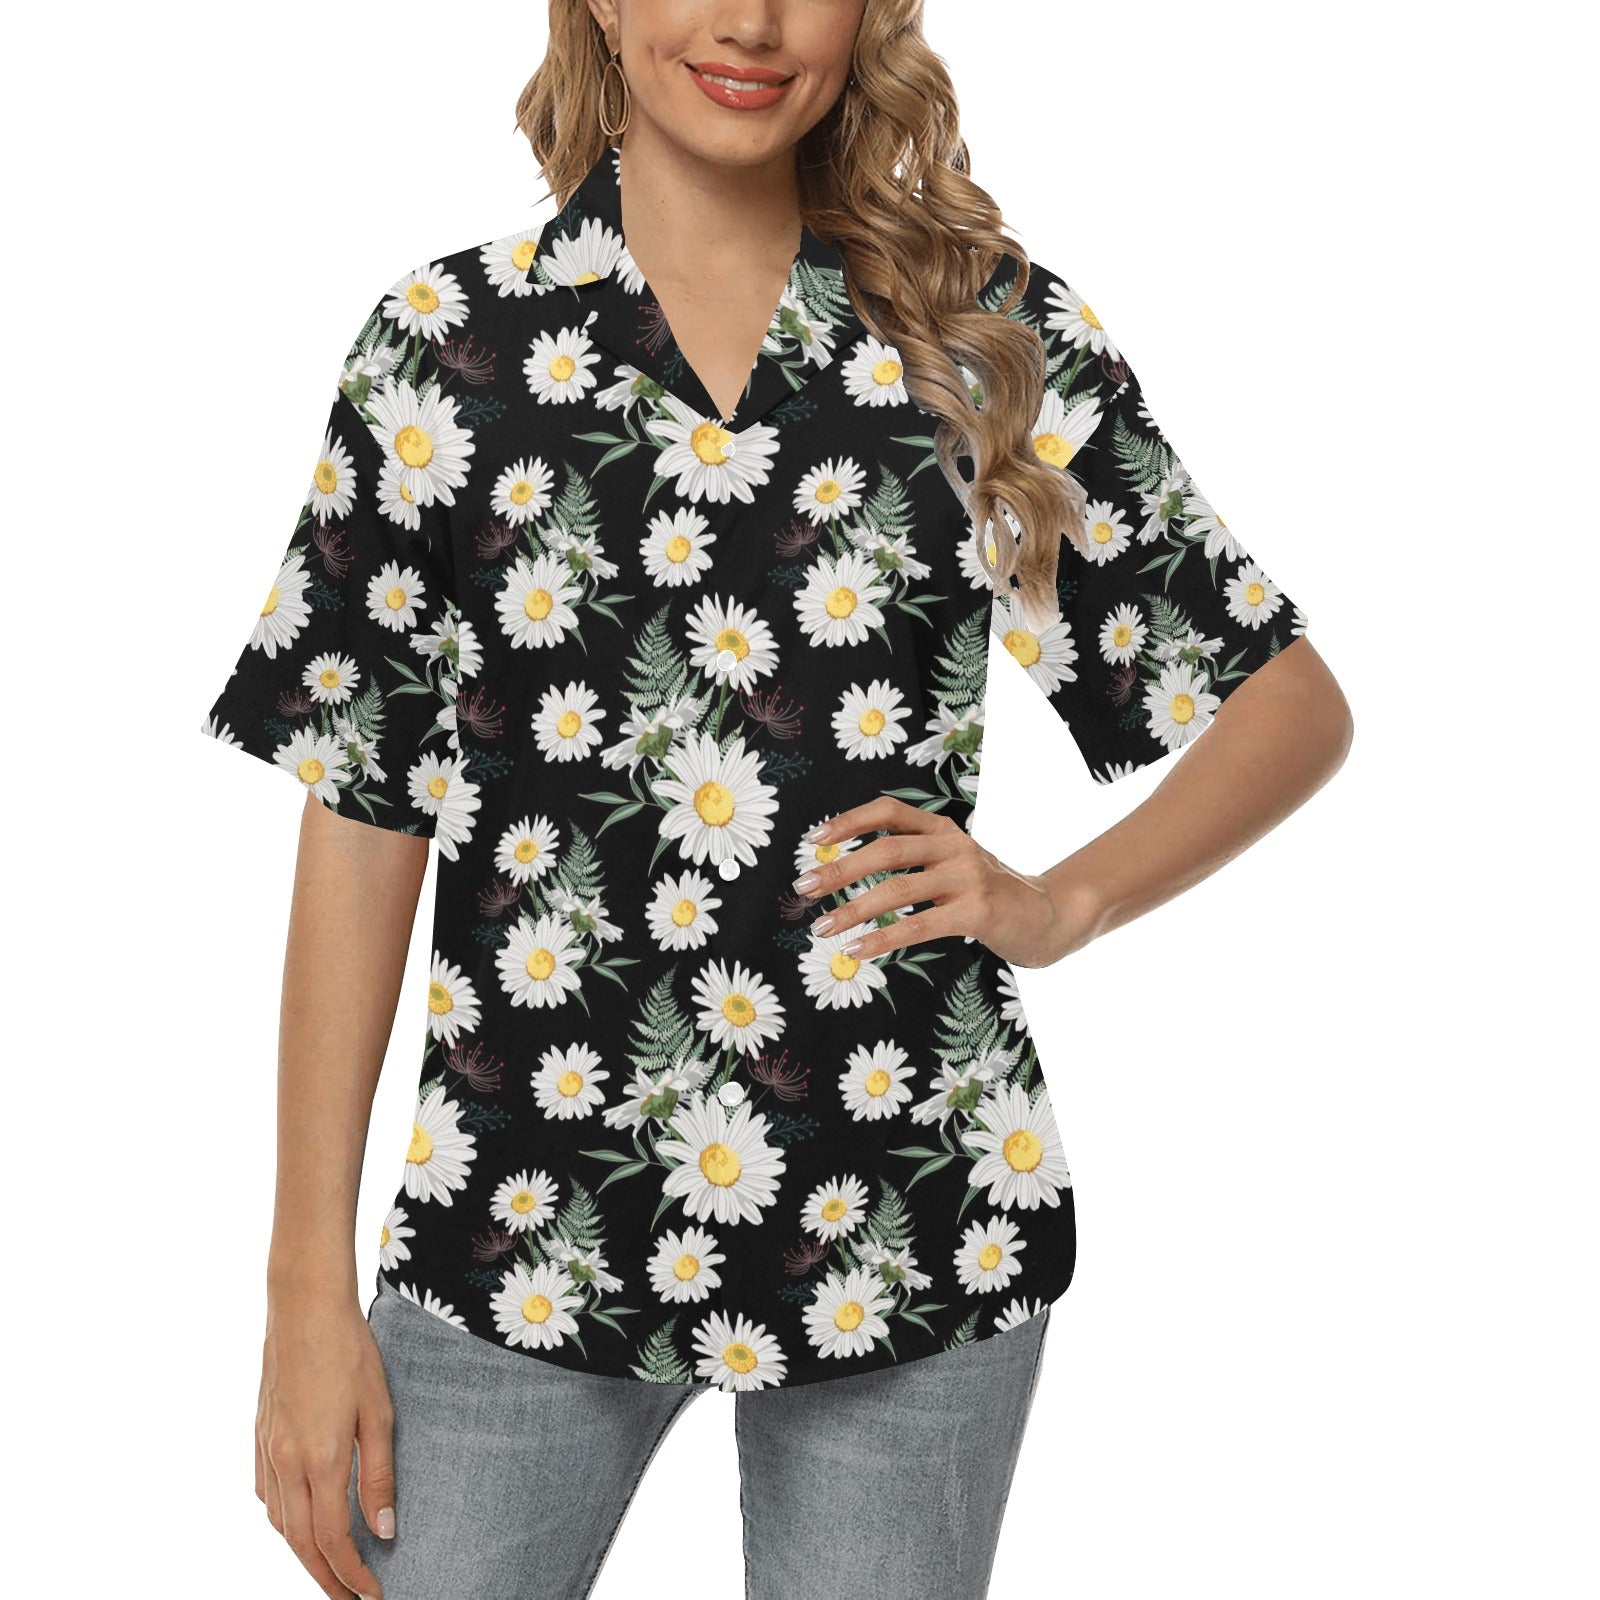 Daisy Pattern Print Design DS07 Women's Hawaiian Shirt